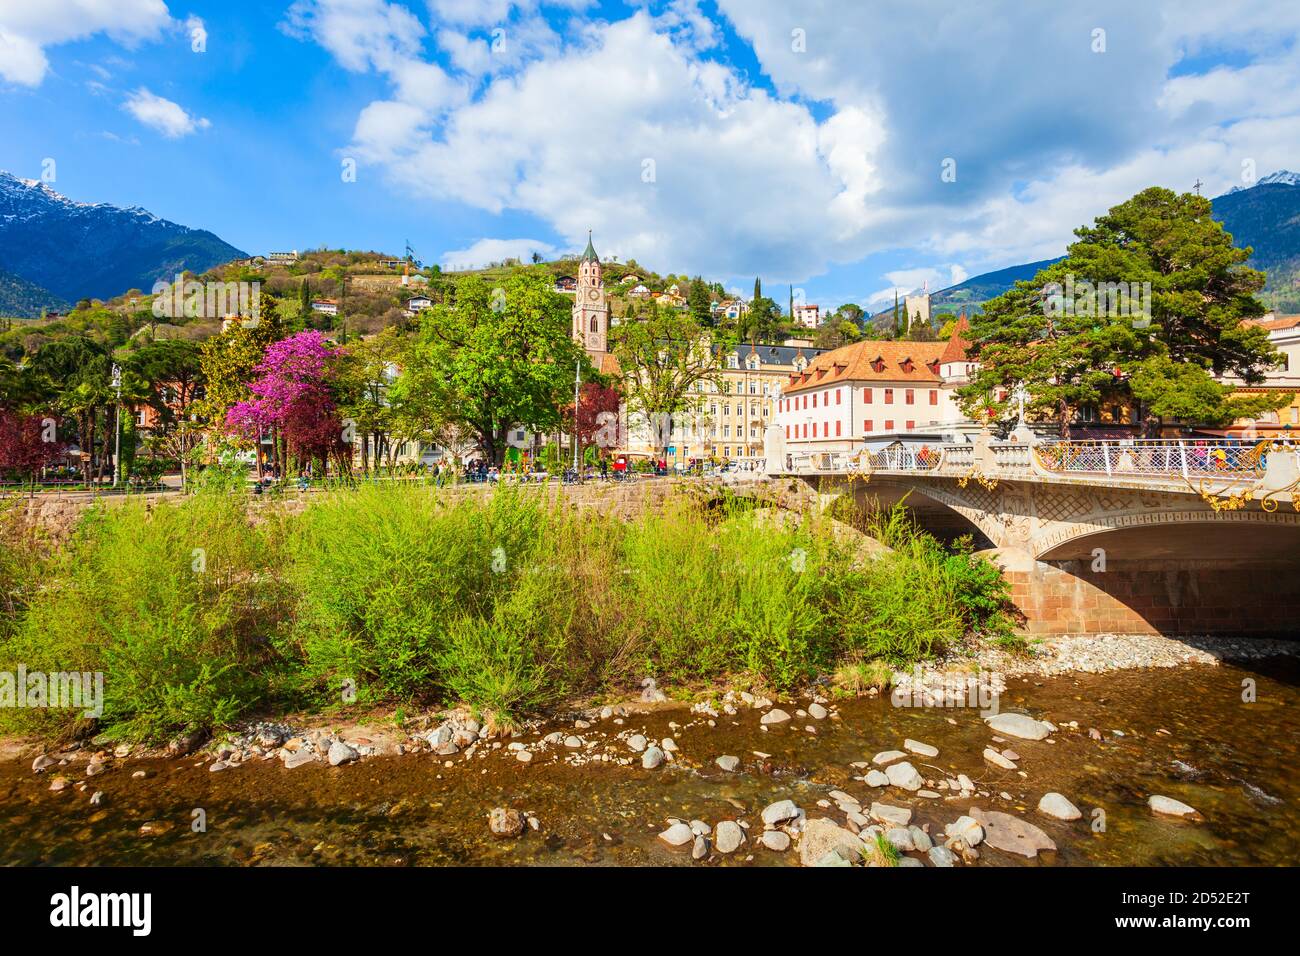 Meran Zentrum ansehen. Meran oder Meran ist eine Stadt in der Provinz Südtirol in Norditalien. Stockfoto